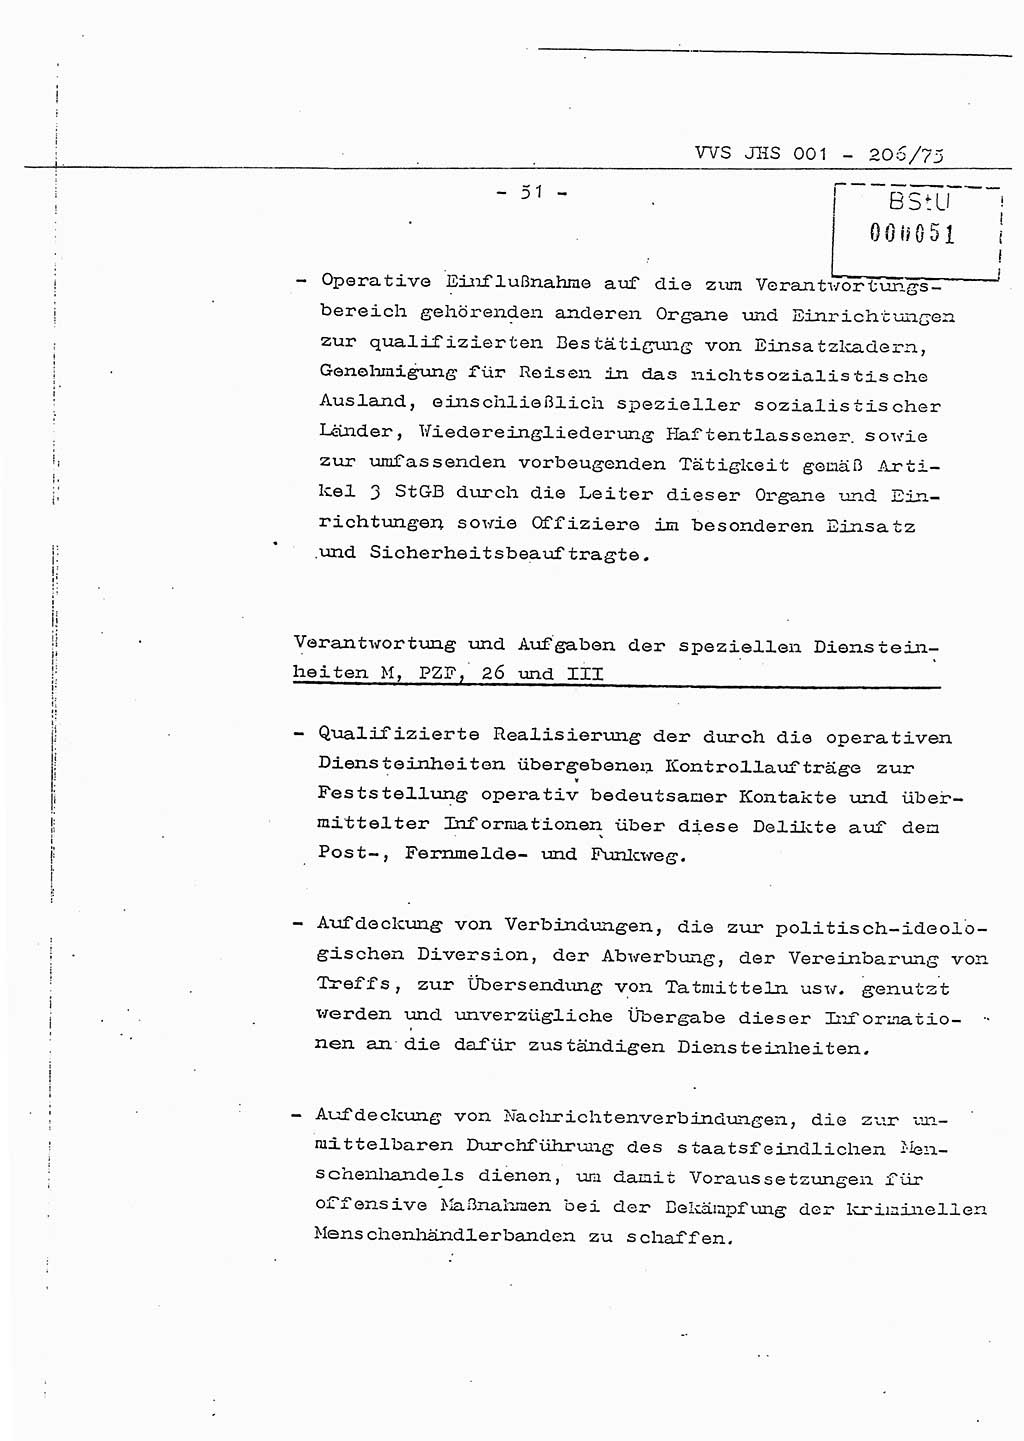 Dissertation Generalmajor Manfred Hummitzsch (Leiter der BV Leipzig), Generalmajor Heinz Fiedler (HA Ⅵ), Oberst Rolf Fister (HA Ⅸ), Ministerium für Staatssicherheit (MfS) [Deutsche Demokratische Republik (DDR)], Juristische Hochschule (JHS), Vertrauliche Verschlußsache (VVS) 001-206/75, Potsdam 1975, Seite 51 (Diss. MfS DDR JHS VVS 001-206/75 1975, S. 51)